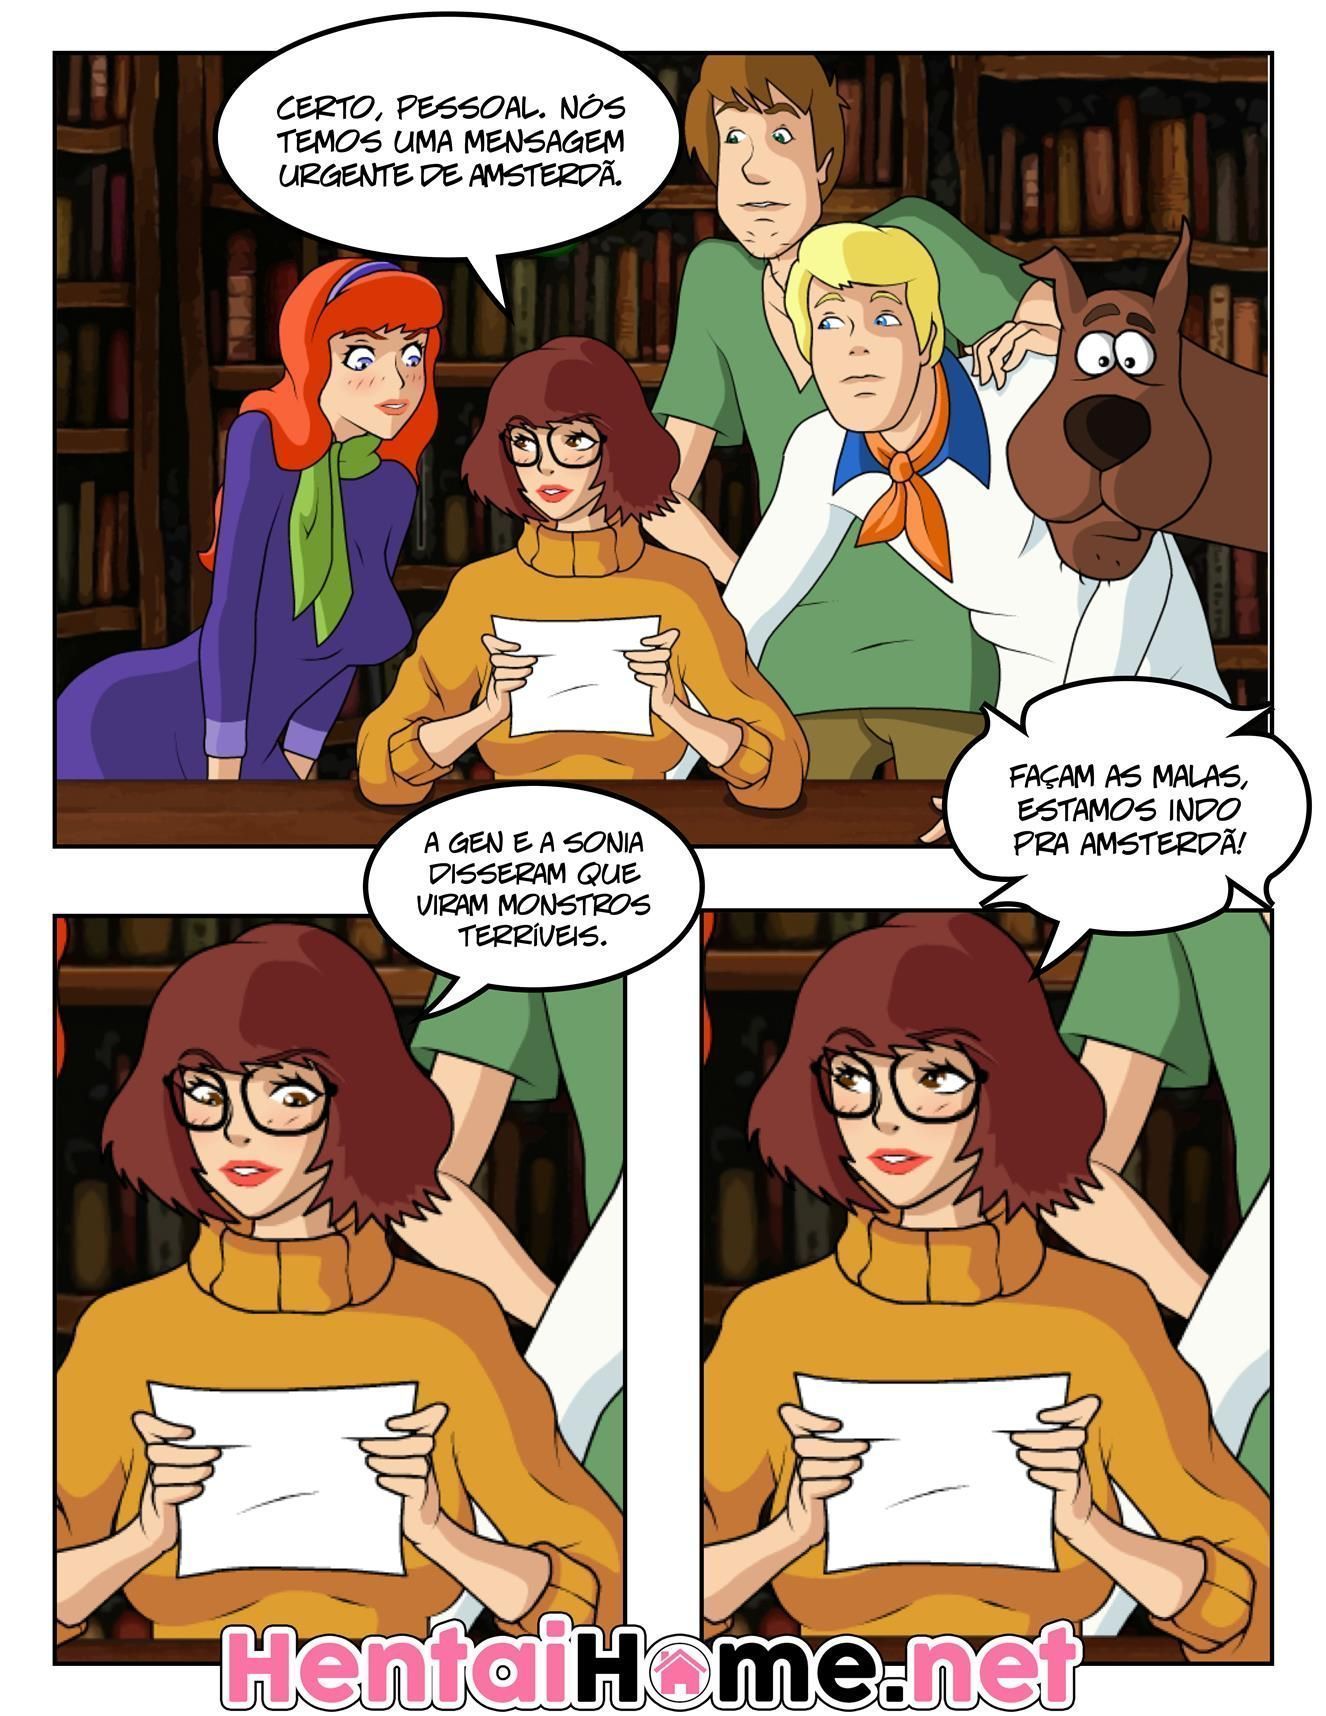 Scooby Doo: Velma precisa de leitinho - Foto 1